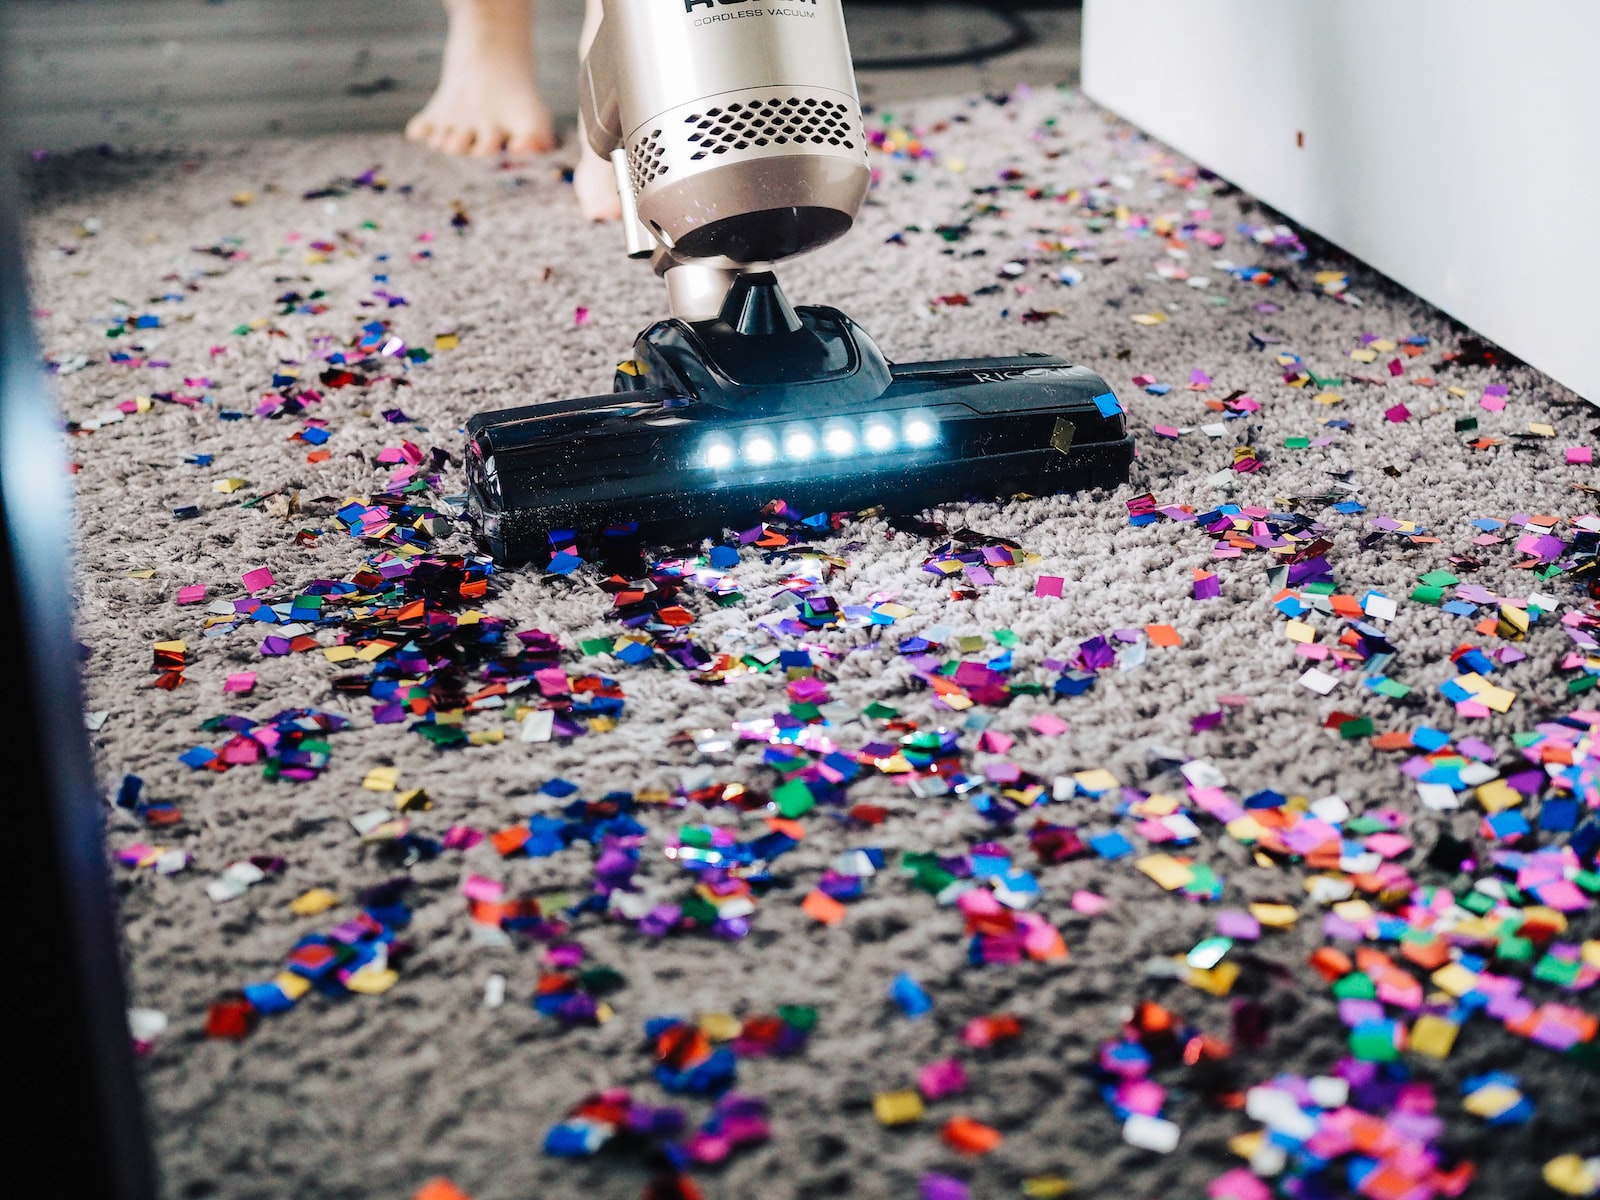 Vacuum cleaner sucks up confetti